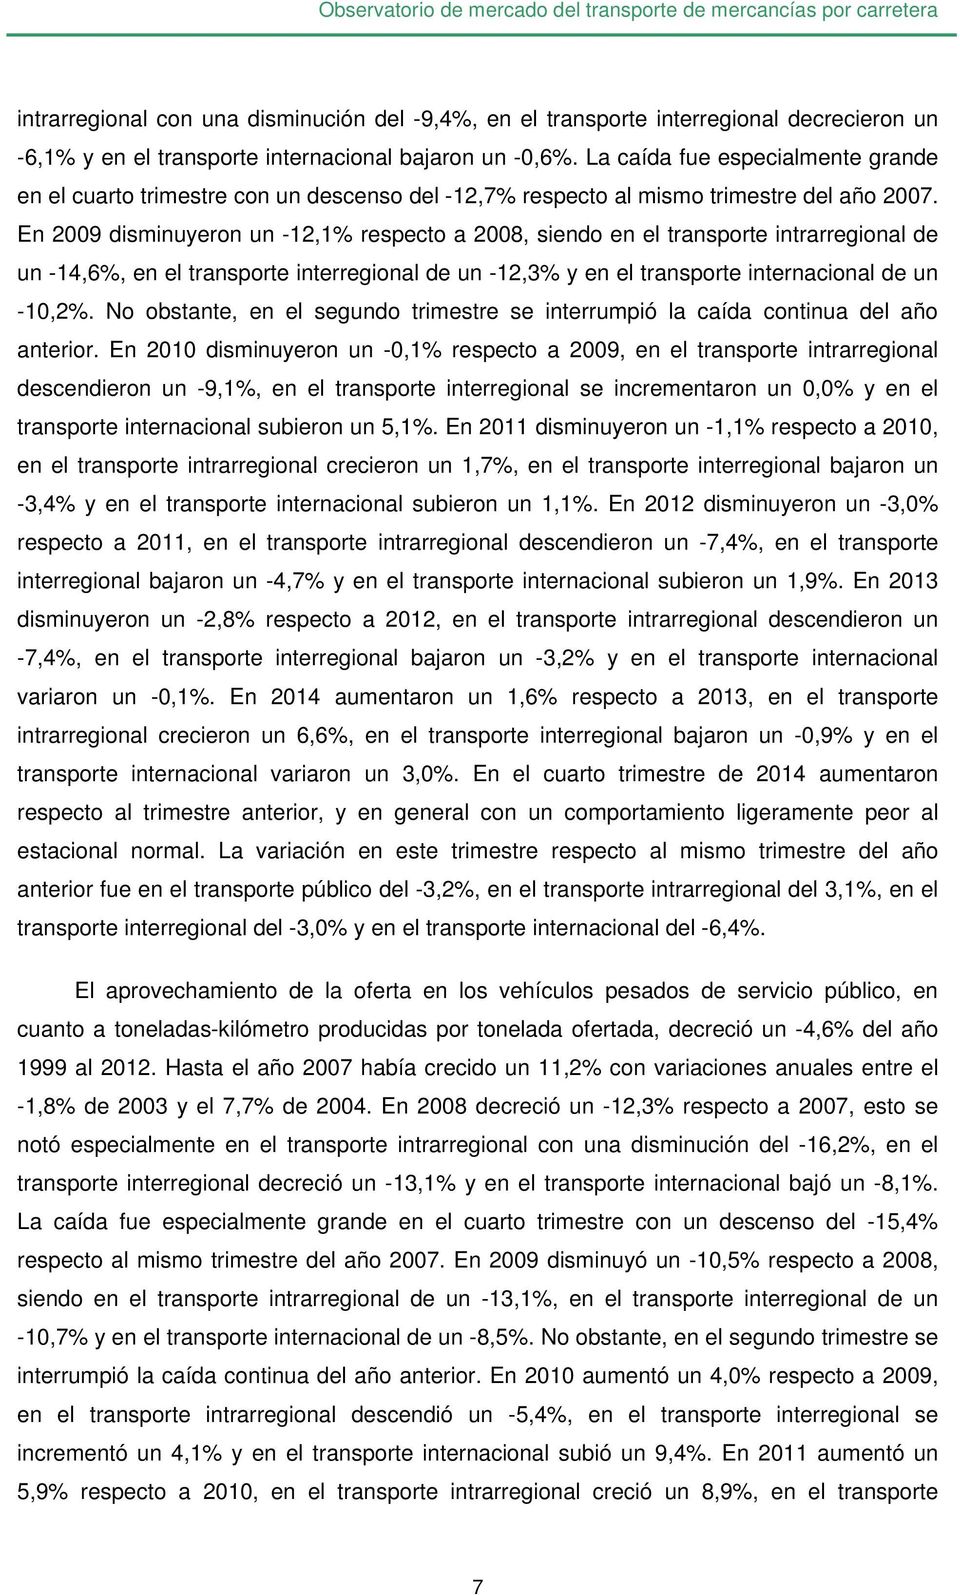 En 2009 disminuyeron un -12,1% respecto a 2008, siendo en el transporte intrarregional de un -14,6%, en el transporte interregional de un -12,3% y en el transporte internacional de un -10,2%.